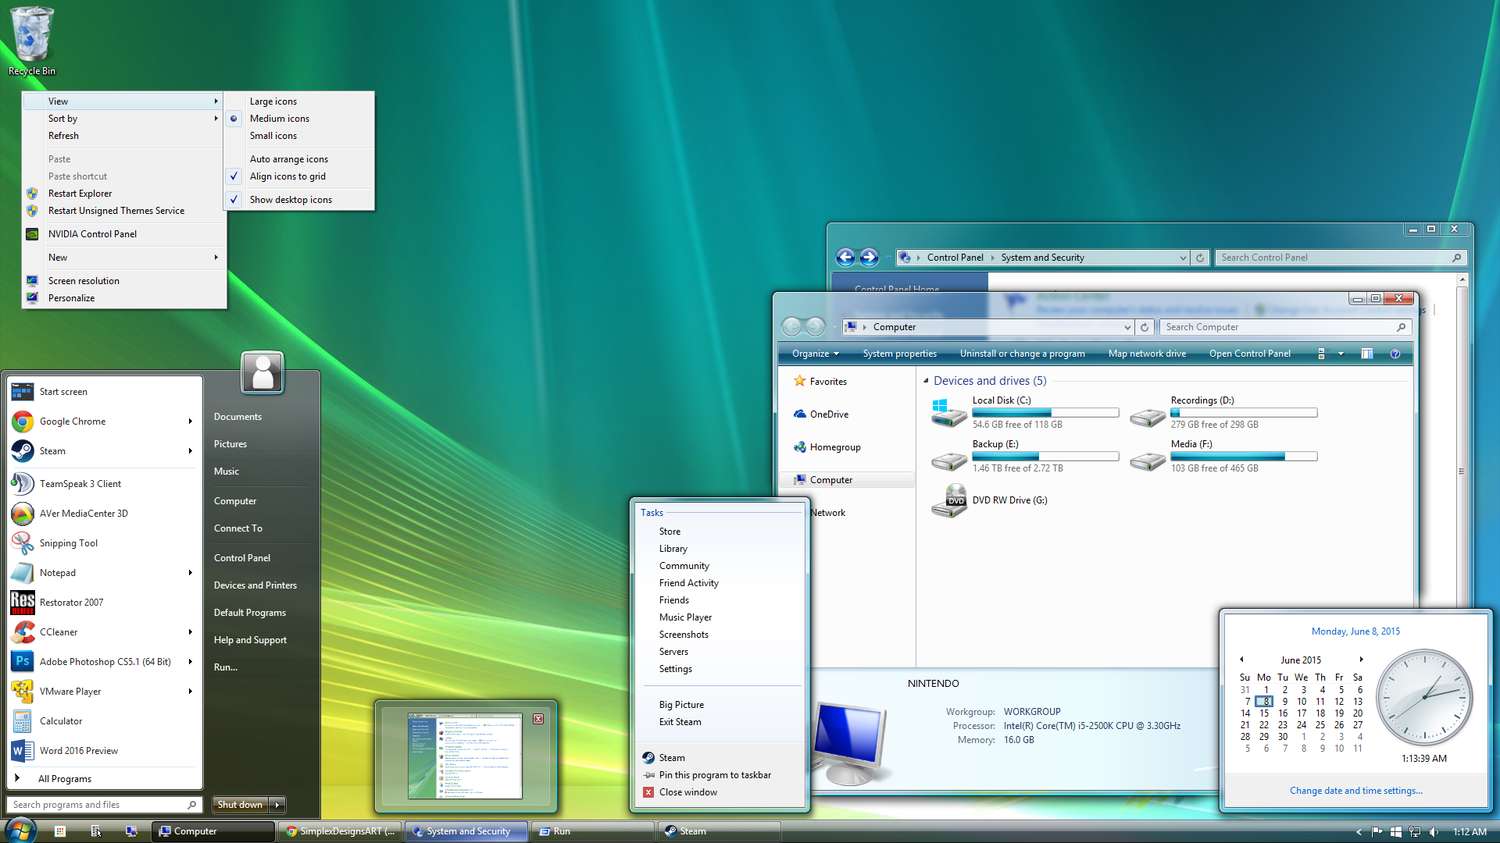 Fin de soporte para Windows Vista: ¿qué hago ahora?